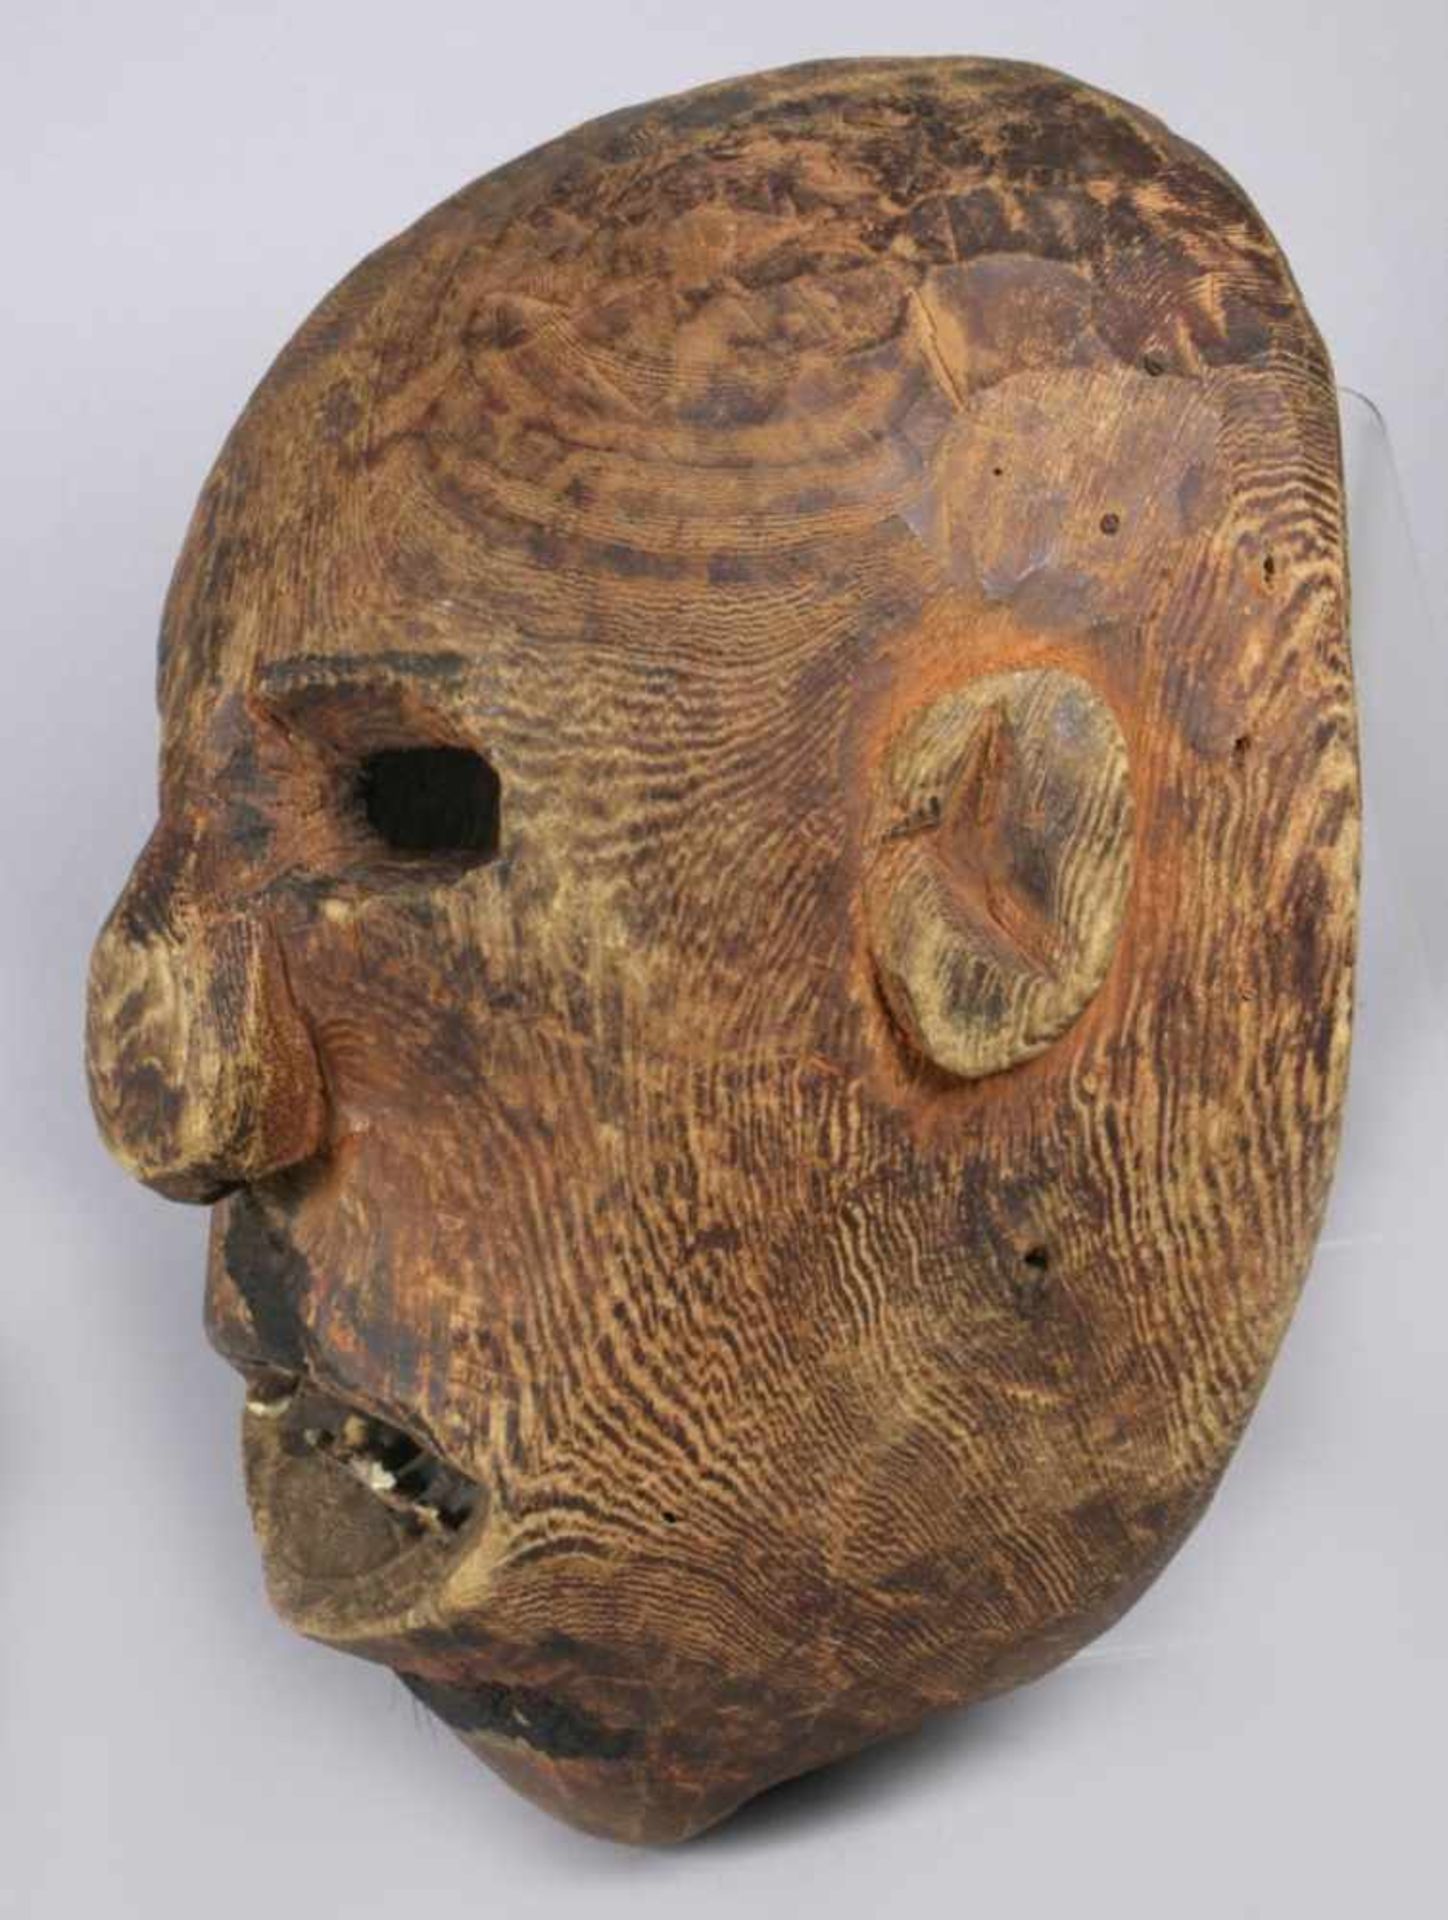 Handmaske, wohl Makonde, Tansania, plastisches Gesicht mit offenem, mit kleinen Pflöckengezahntem - Bild 2 aus 4